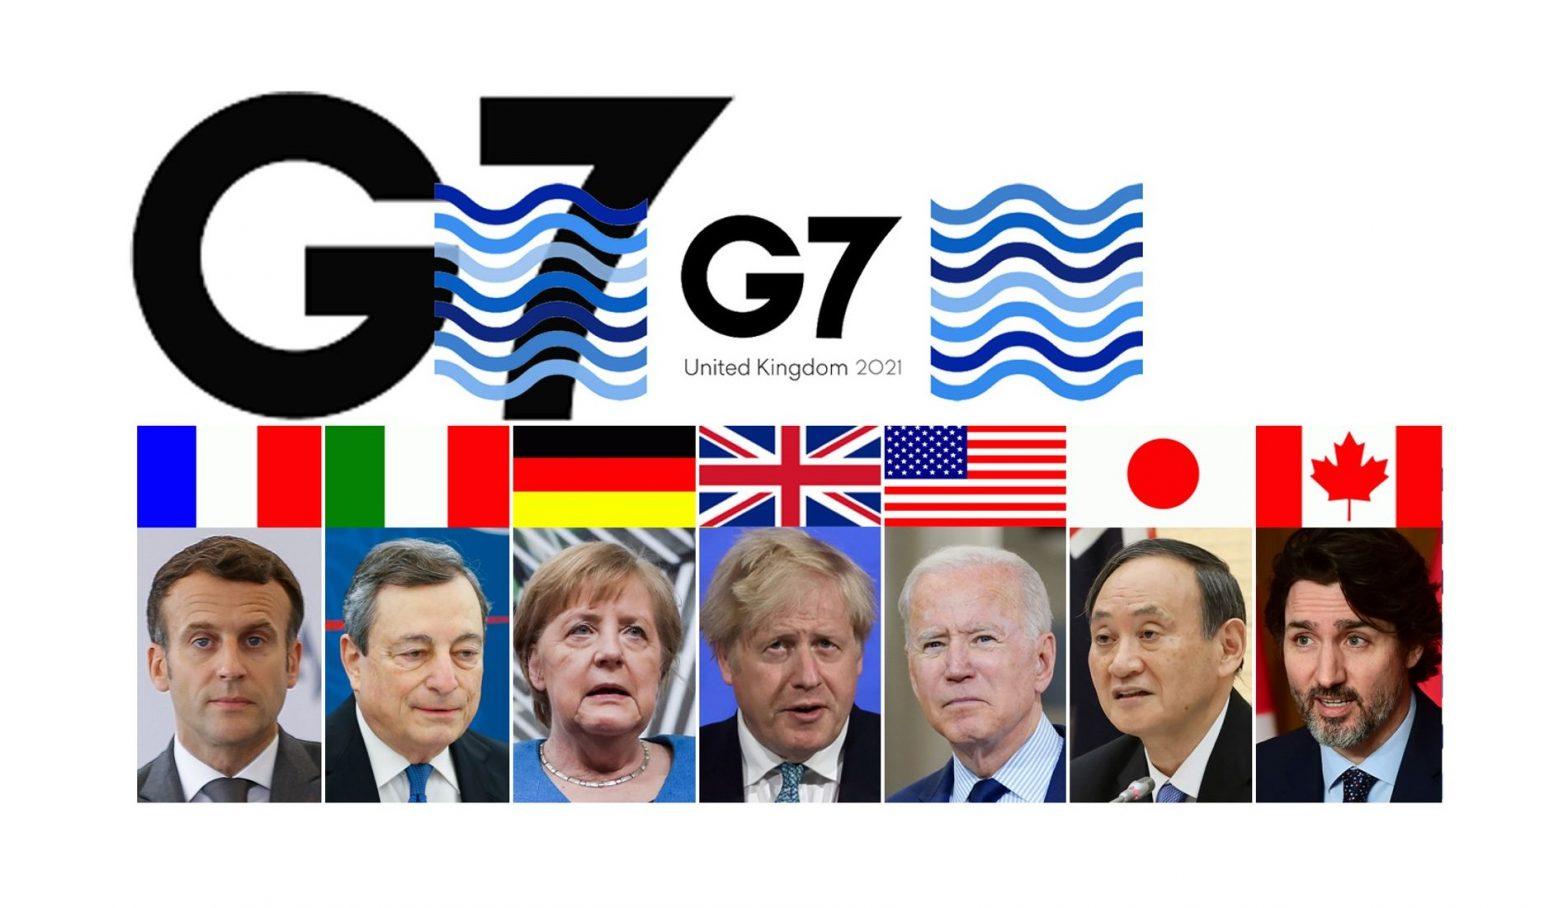 47th G7 summit held in UK's Cornwall | यूकेच्या कॉर्नवॉलमध्ये 47 वी जी-7 परिषद_30.1